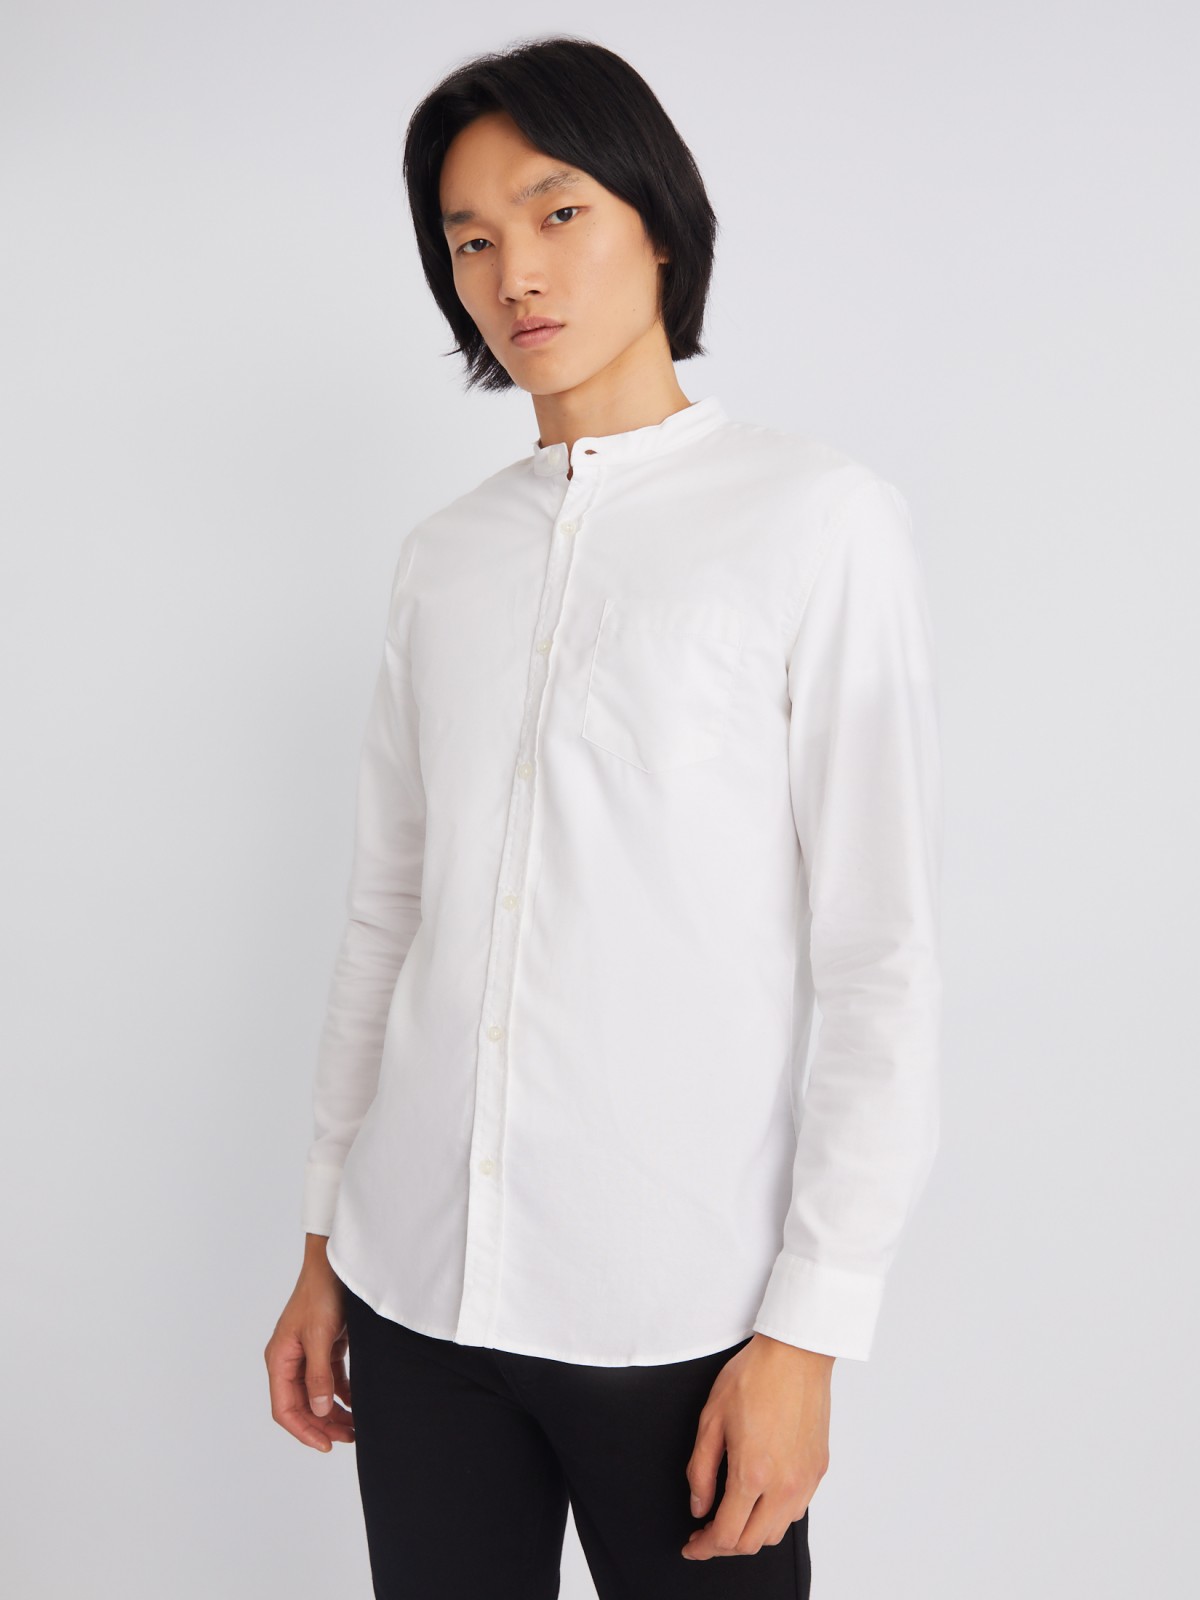 Офисная рубашка с воротником-стойкой и длинным рукавом zolla 21232214R043, цвет белый, размер S - фото 4